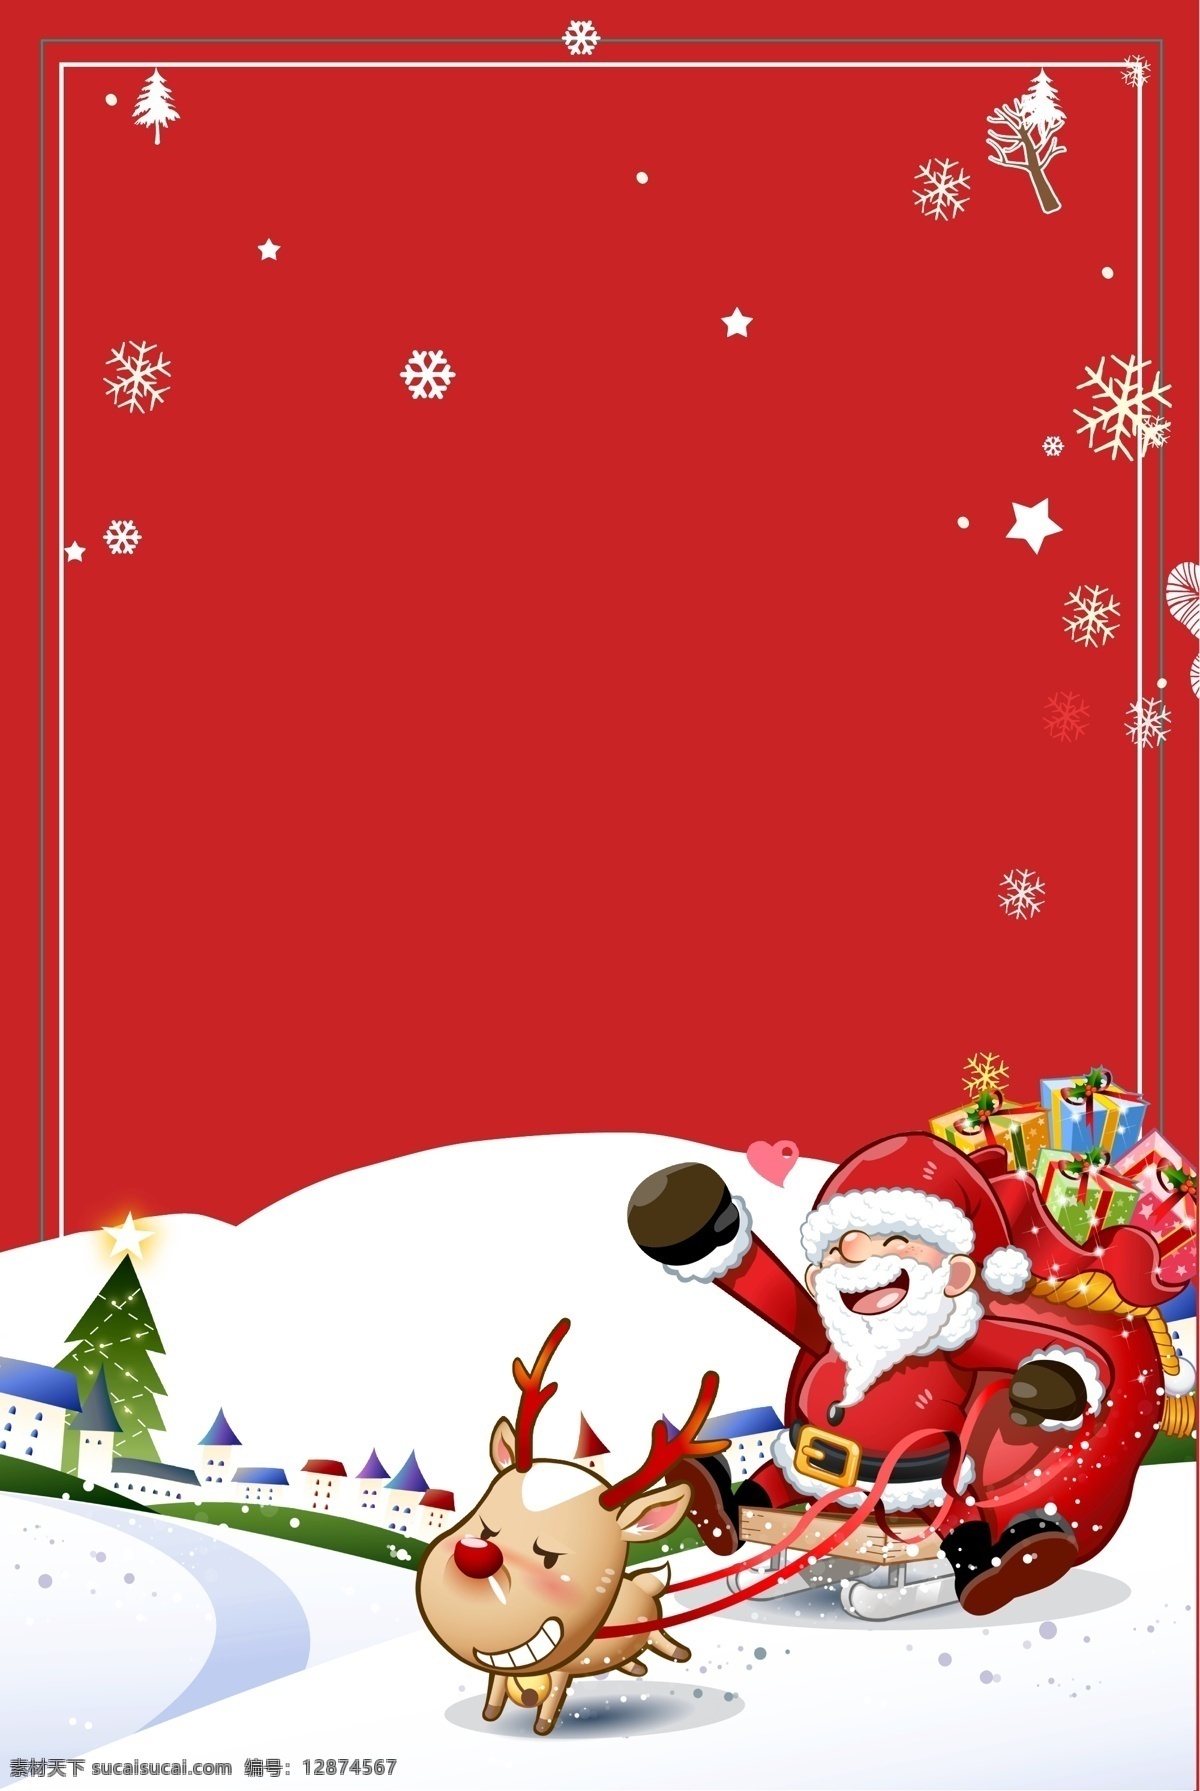 2019 圣诞节 平安夜 背景 唯美 圣诞树 圣诞老人 礼物 马车 麋鹿 圣诞礼物 平安夜背景